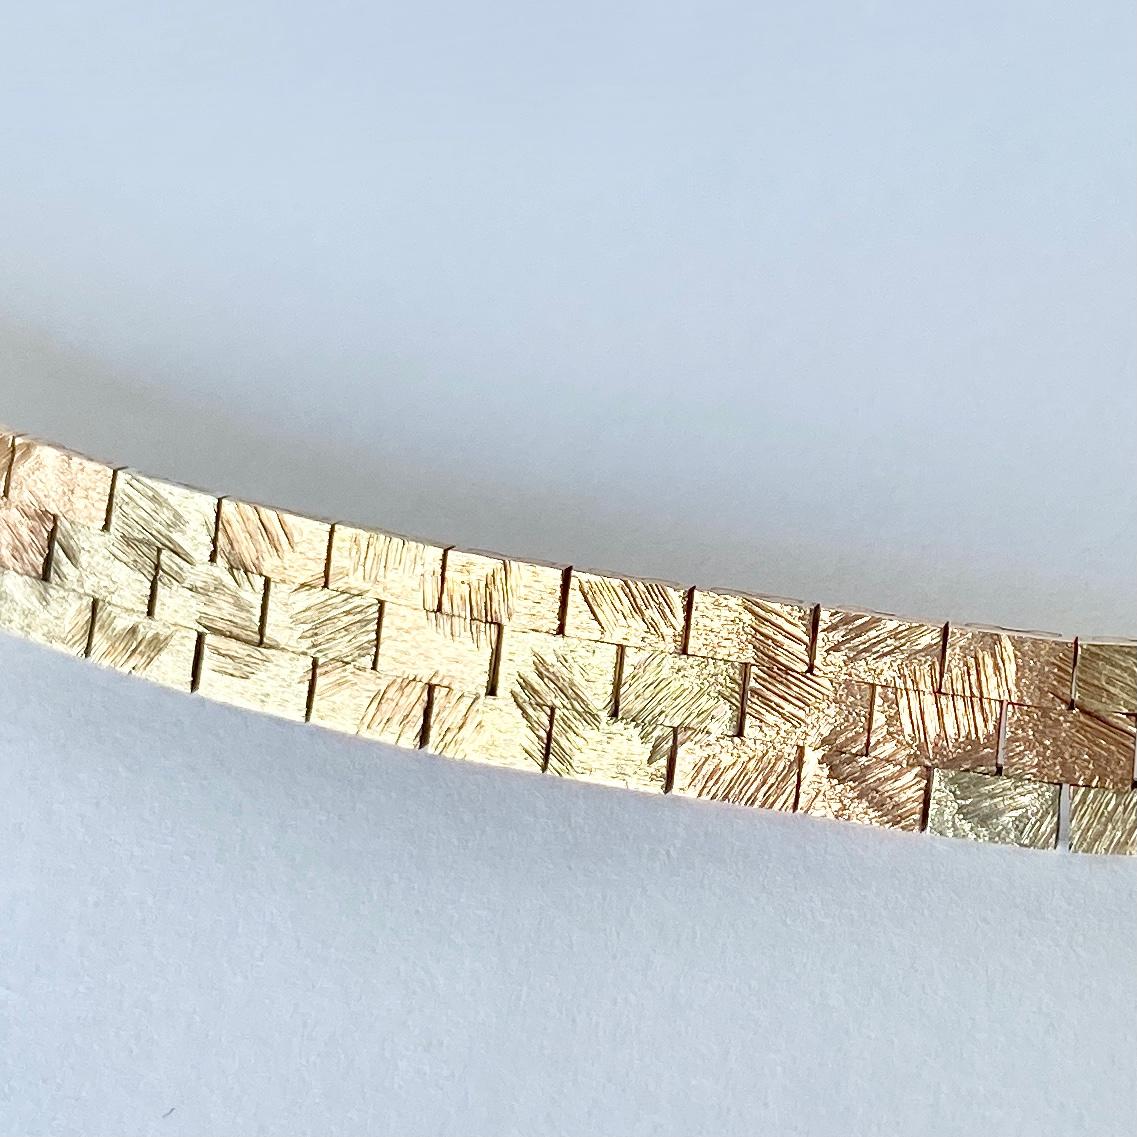 Dieses schöne Vintage-Halsband aus strukturiertem 9-karätigem Gold ist flach und sitzt schön. Sie wird mit einem einfachen Schiebeverschluss geschlossen.

Länge: 41,2 cm
Breite der Kette: 7,5 mm 

Gewicht: 39,1g